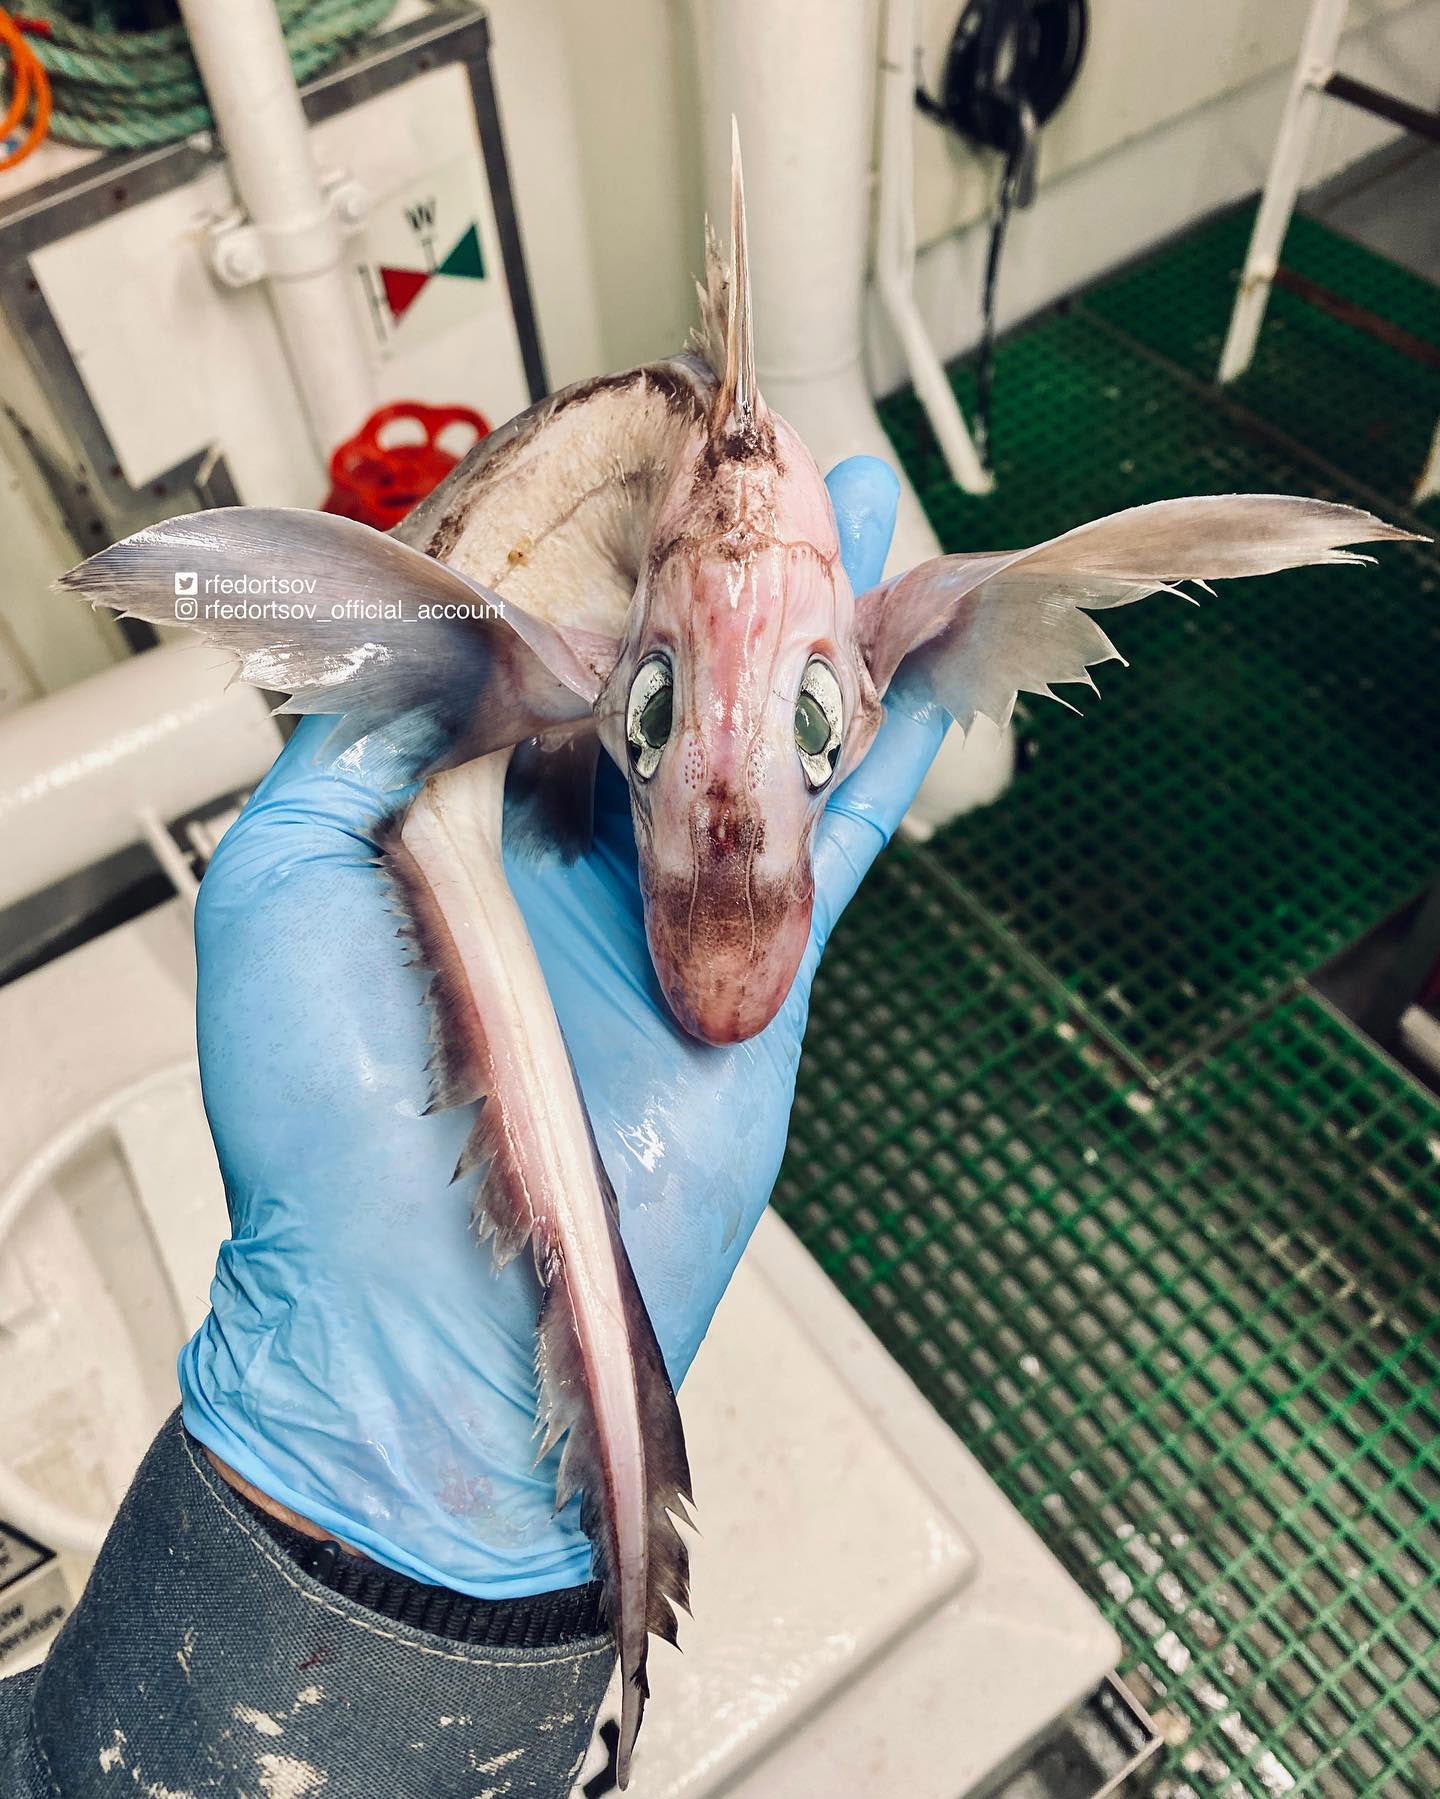 Roman Fedortsov estaba pescando en el mar de Noruega cuando se encontró con una criatura de aspecto peculiar